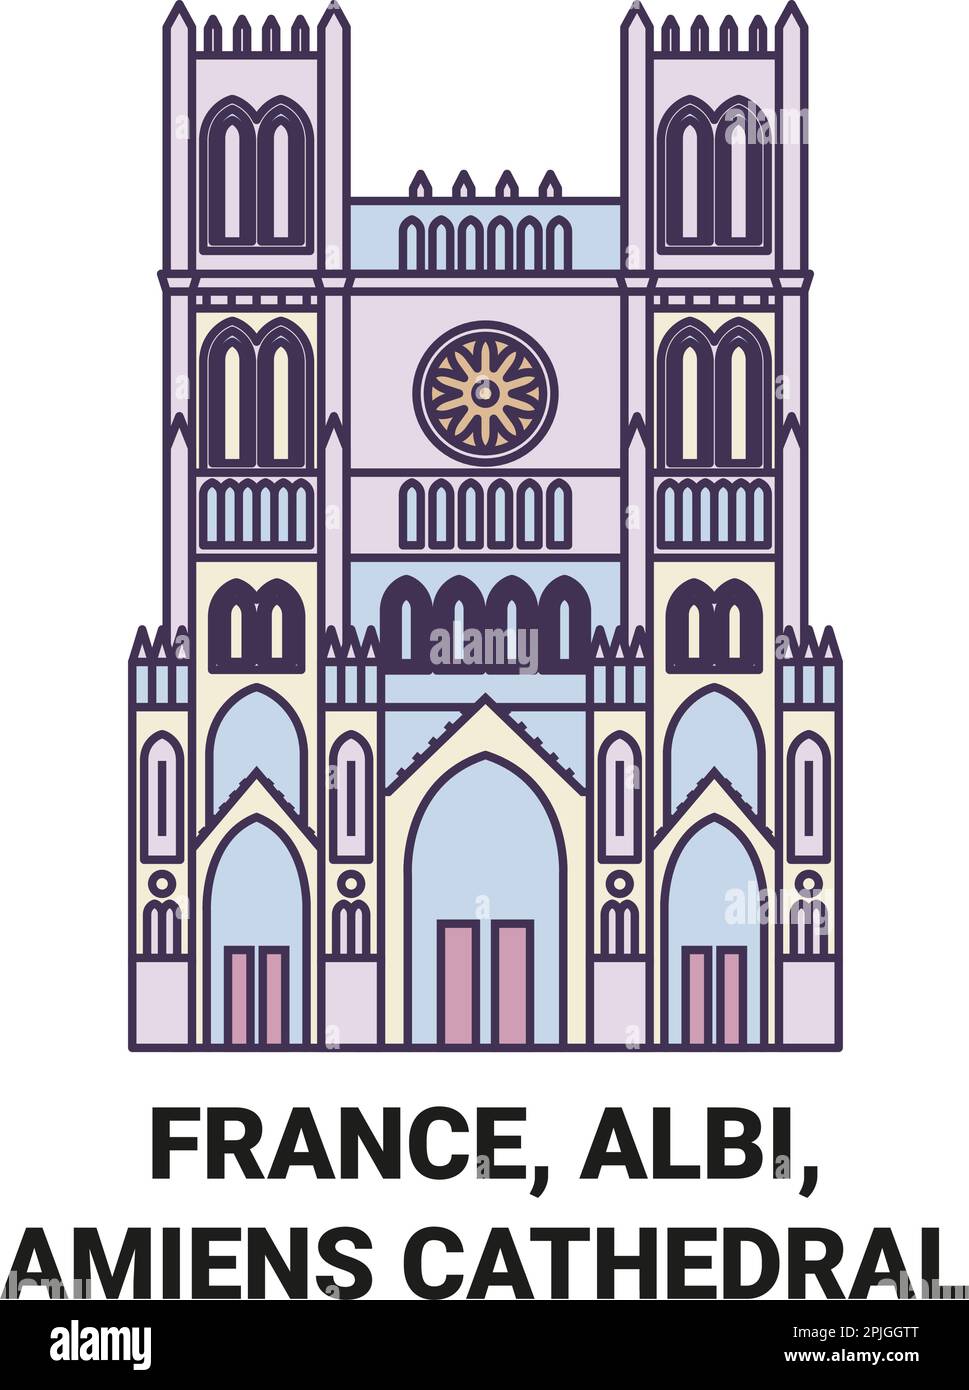 France, Albi, cathédrale d'Amiens Voyage repère illustration vecteur Illustration de Vecteur